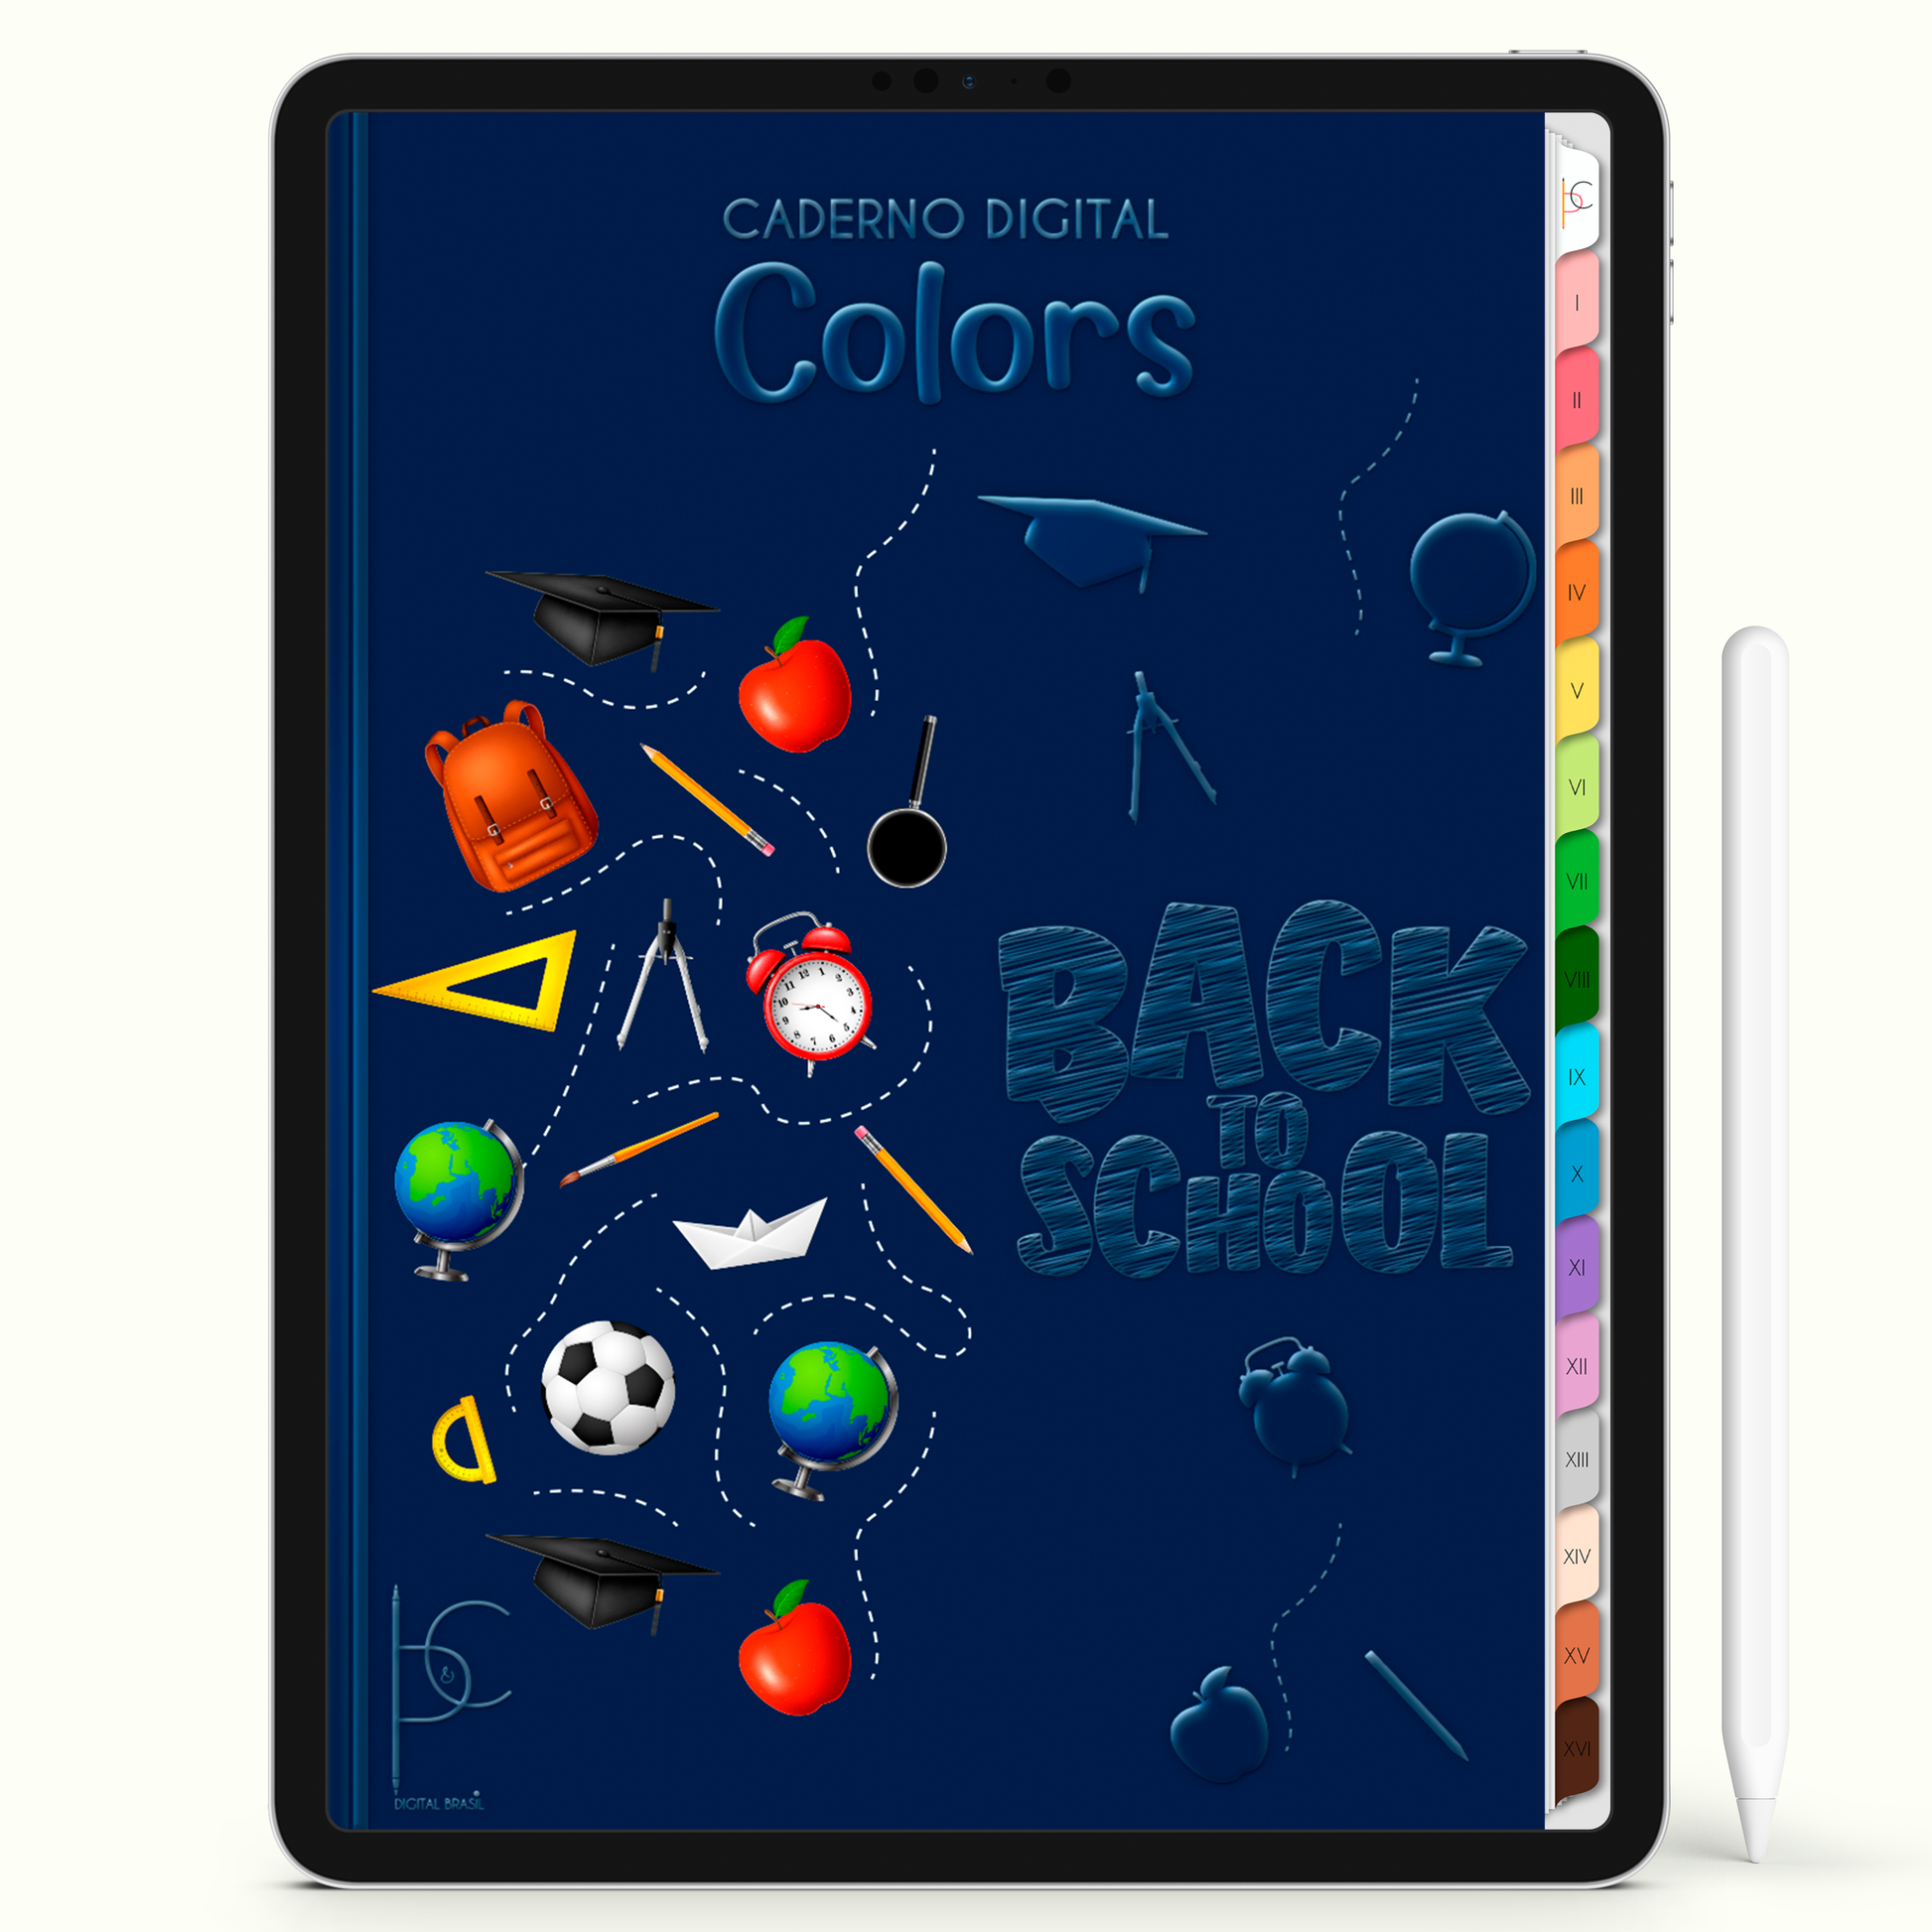 Caderno Digital Colors Study Mode On 16 Matérias • Para iPad e Tablet Android • Download instantâneo • Sustentável